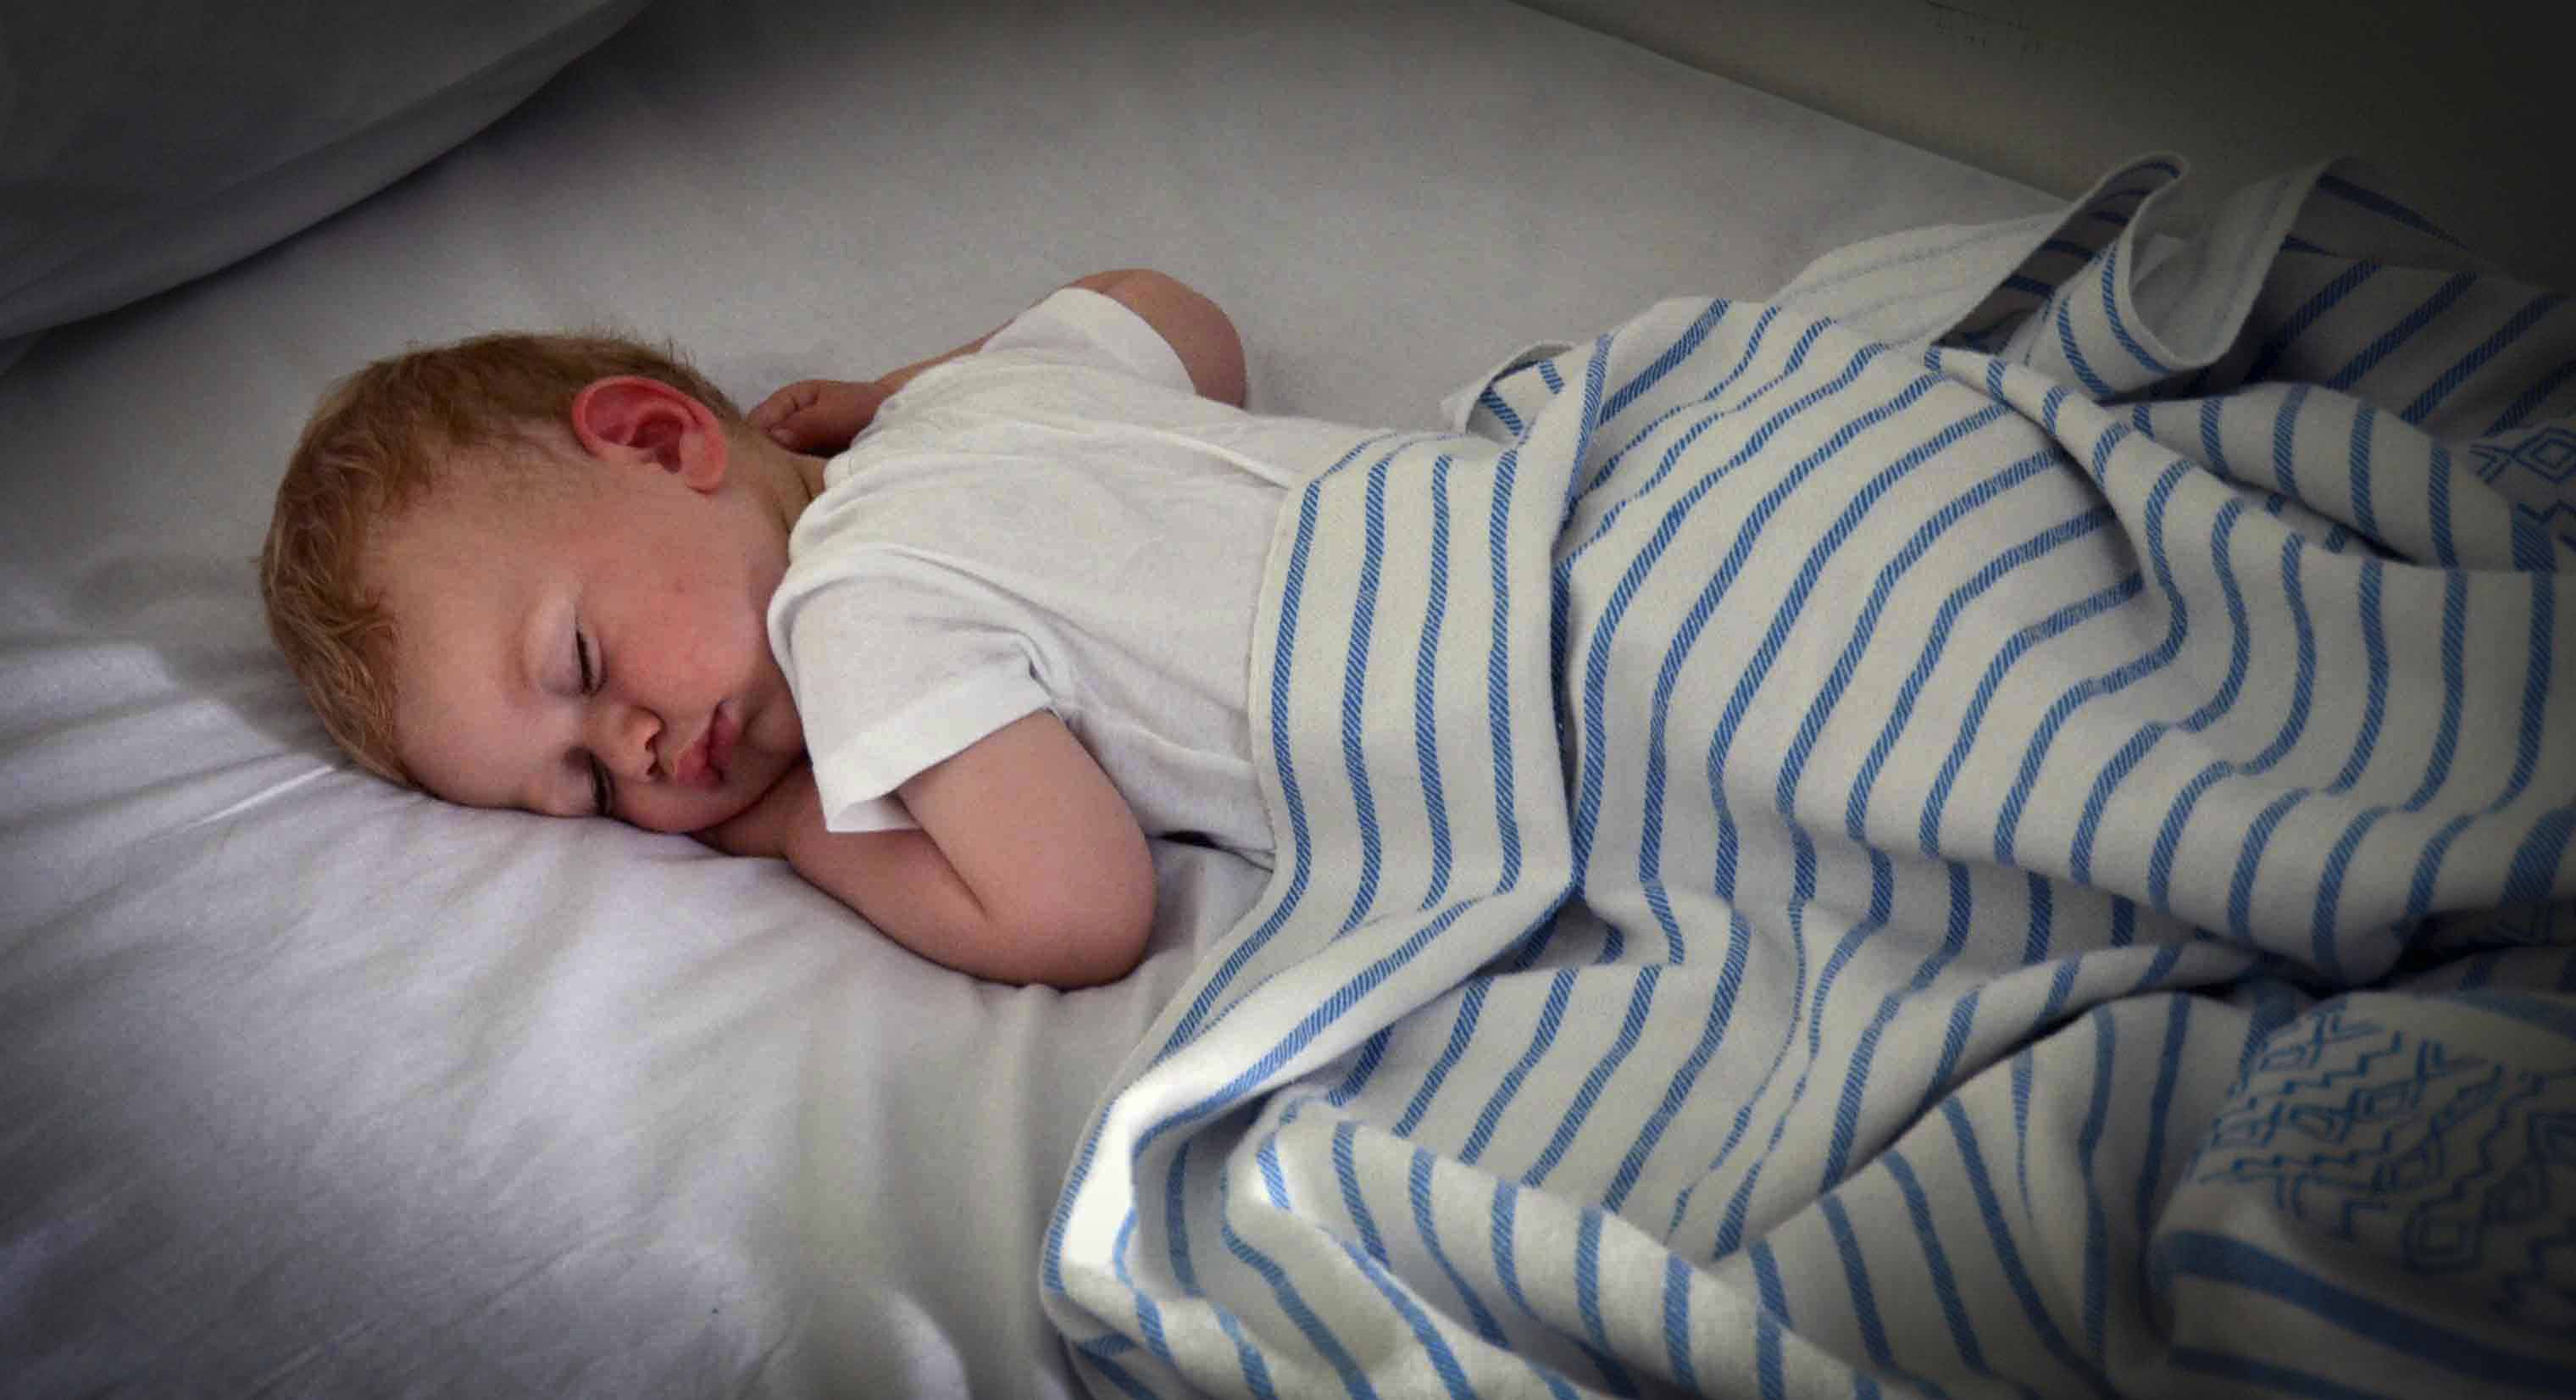 Τι ώρα πρέπει να πάει το παιδί σας για ύπνο; Ο Πρακτικός Οδηγός ΑΝΑΛΟΓΑ ΜΕ ΤΗΝ ΗΛΙΚΙΑ ΤΟΥ.